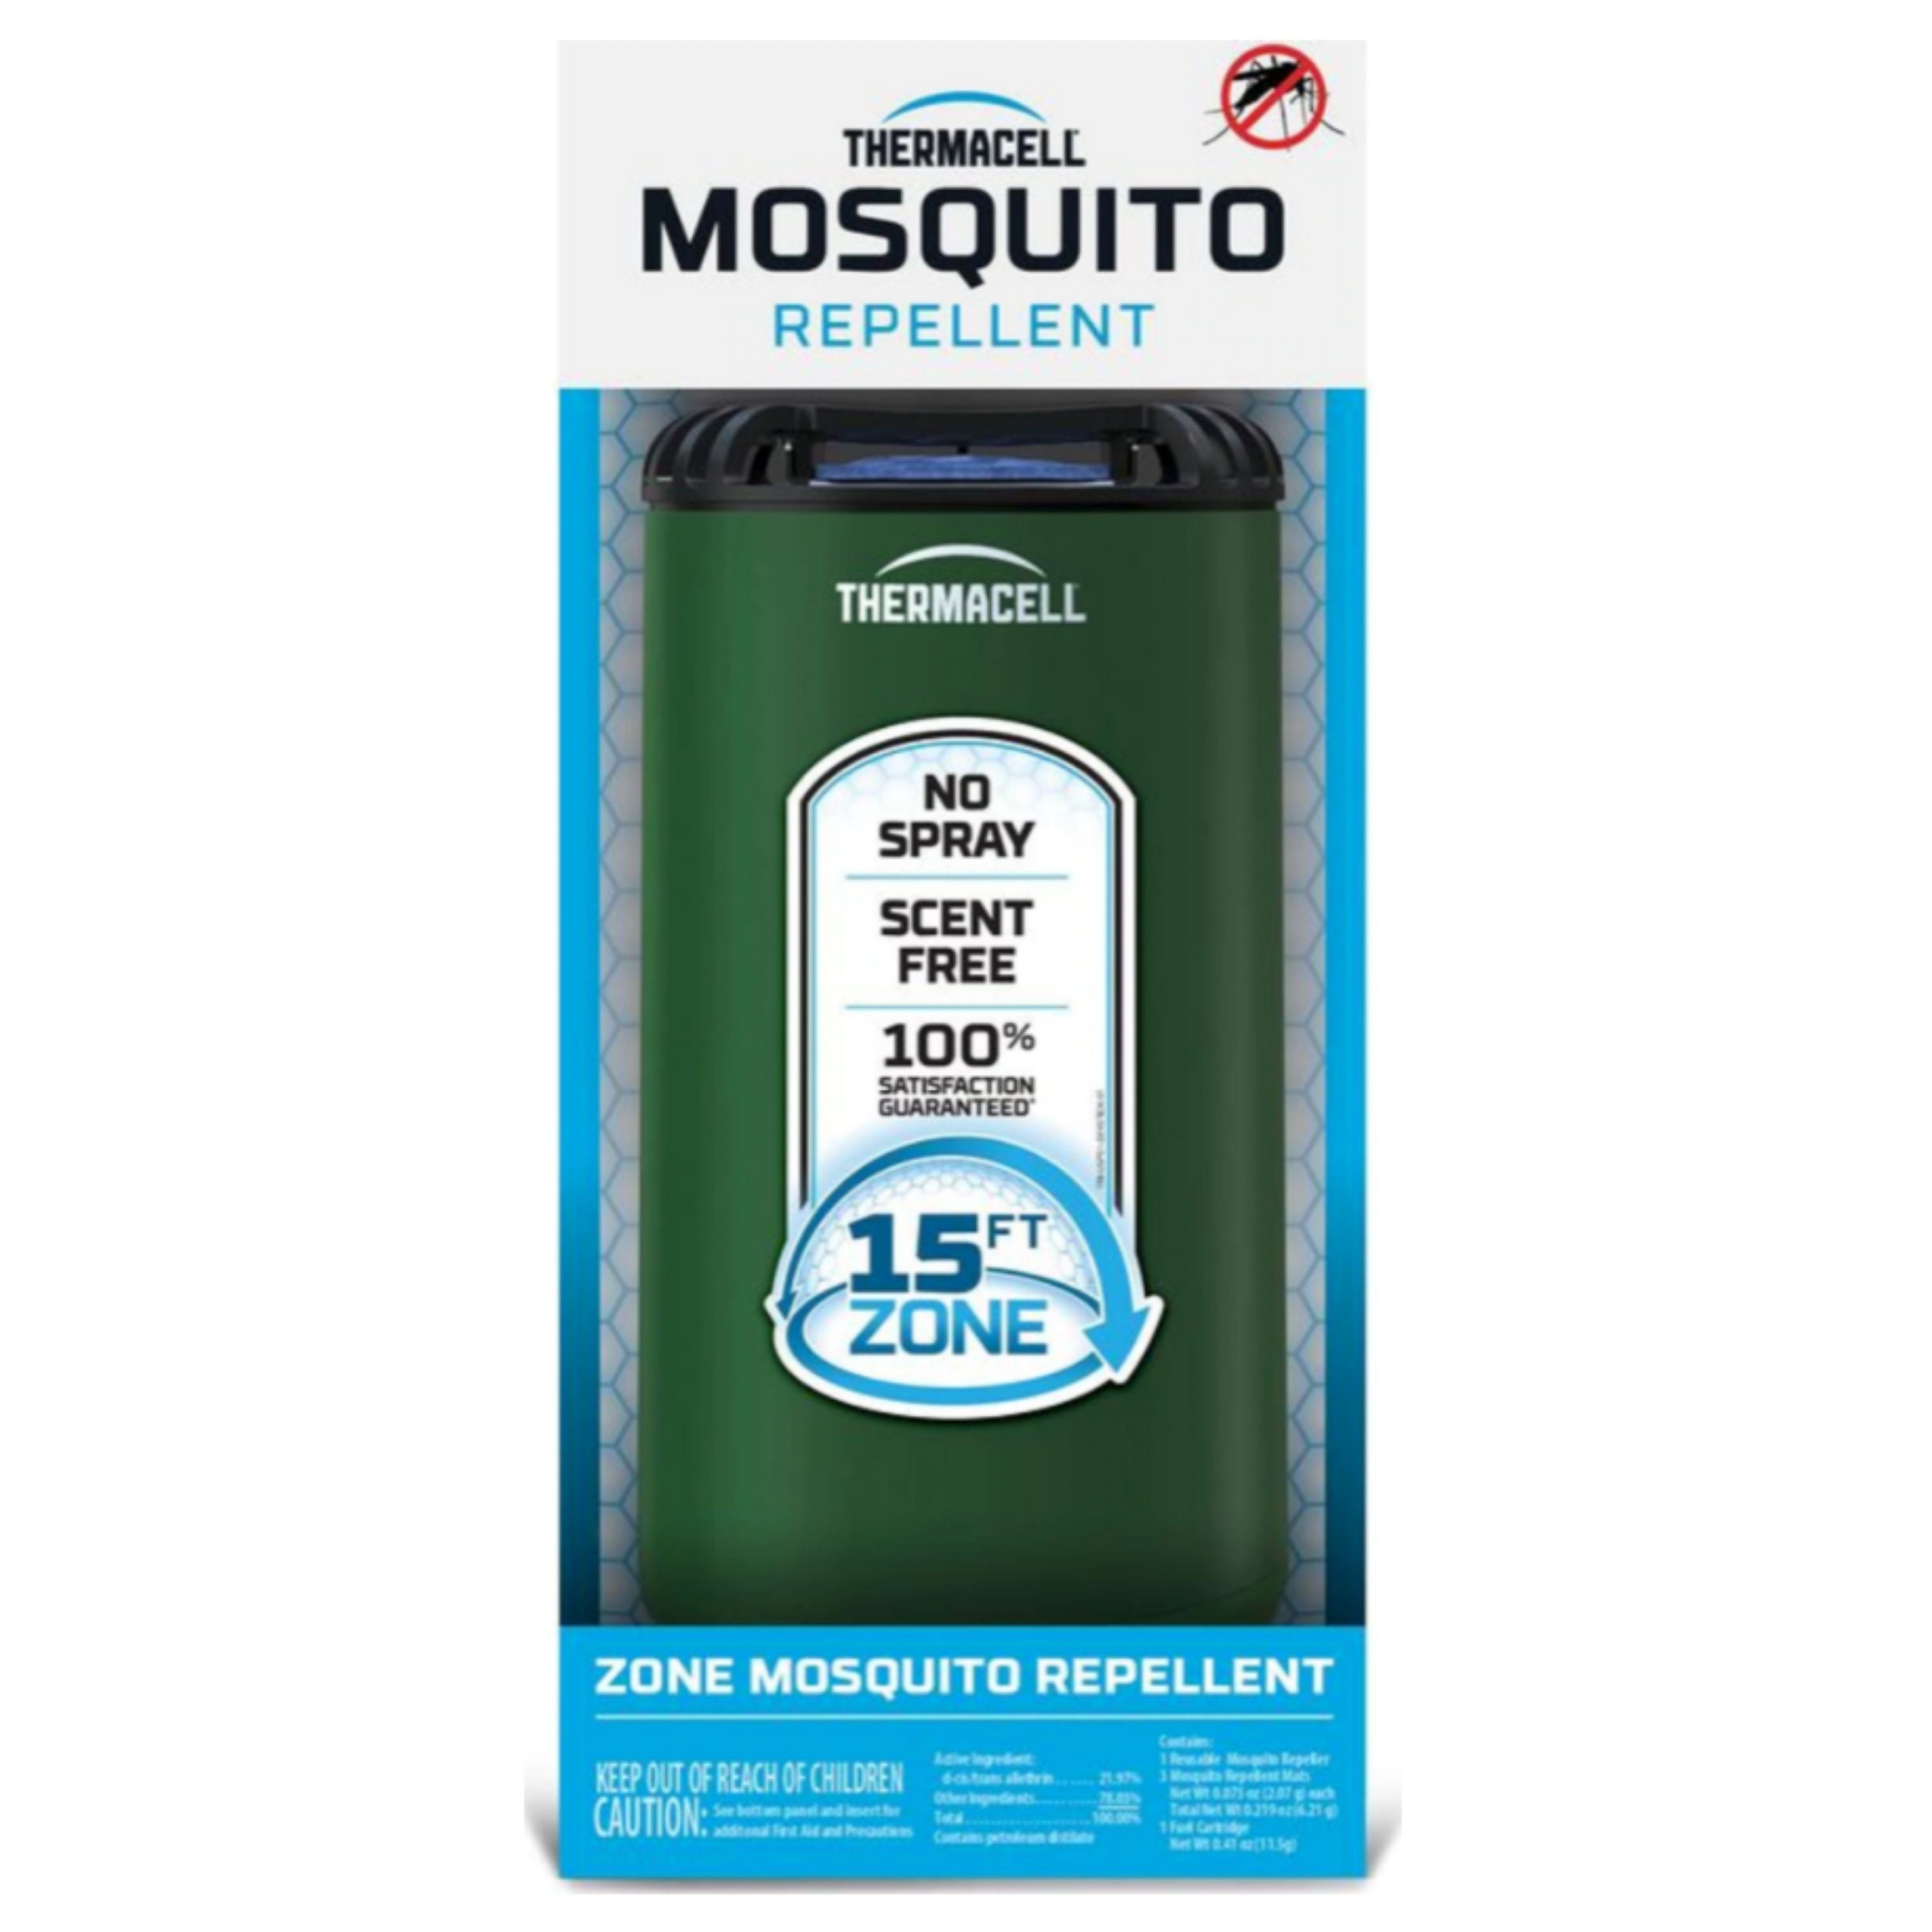 "Patio Shield" Mosquito repellent